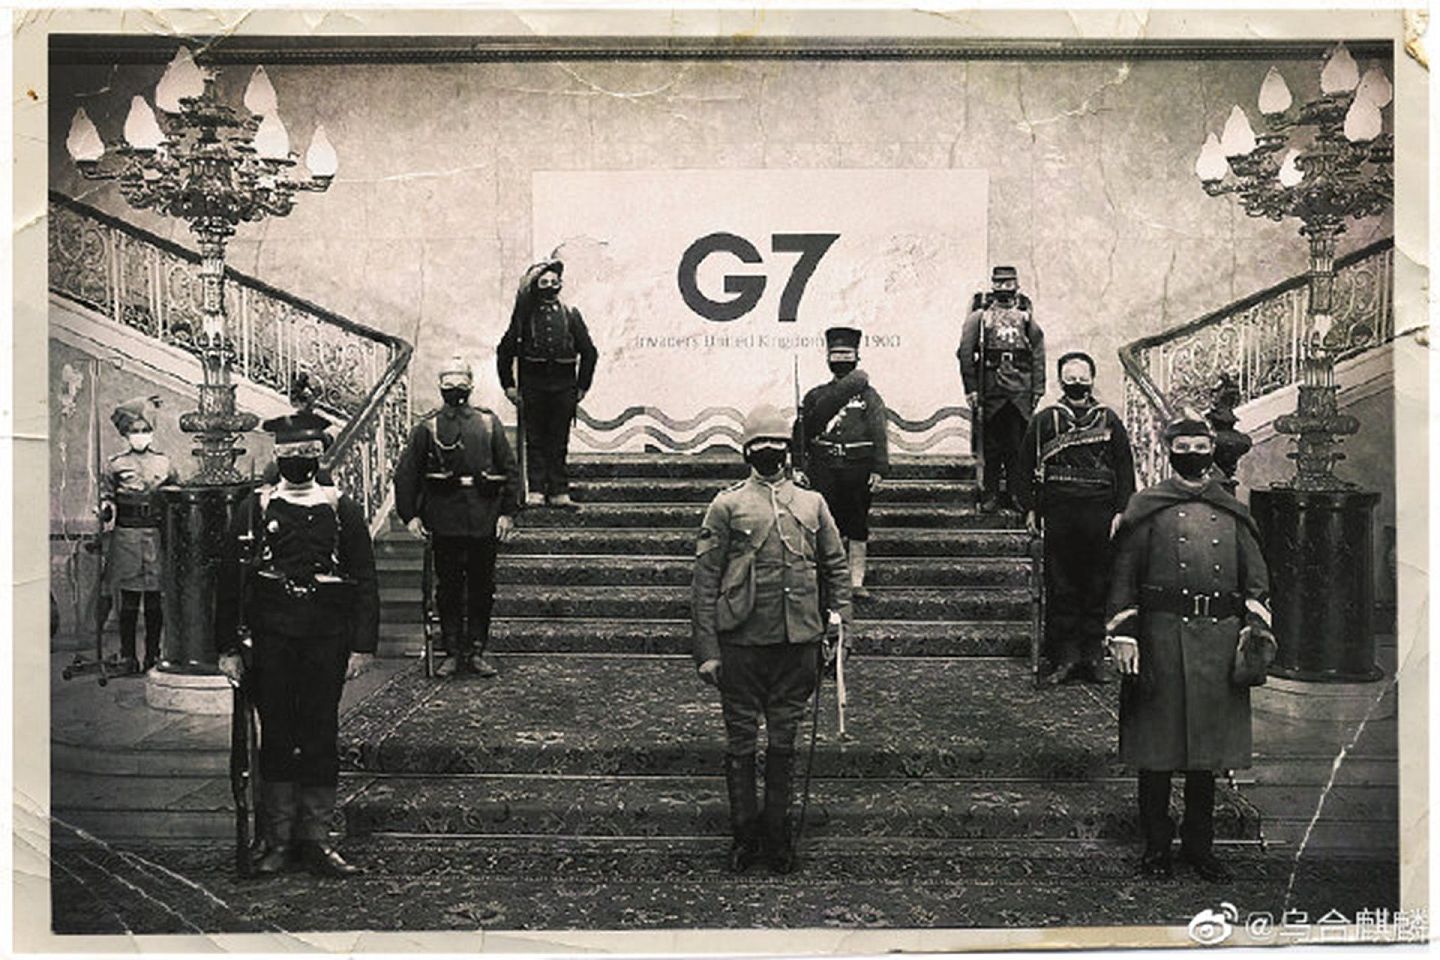 该漫画以G7峰会合影的照片为蓝本进行加工创作。（微博@乌合麒麟）